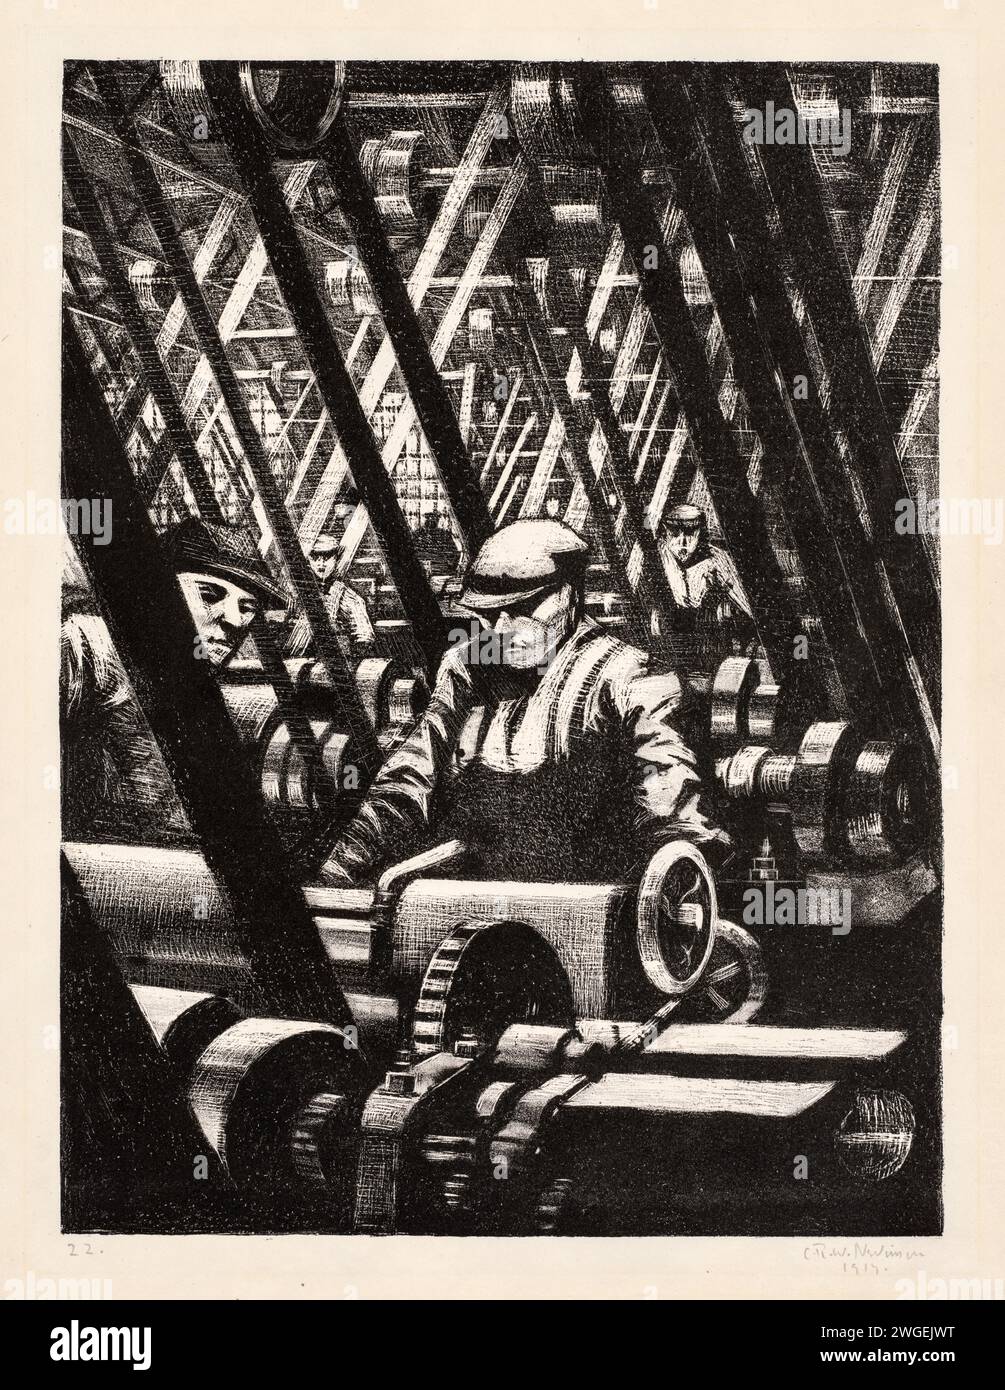 Flugzeuge bauen: Die Maschine herstellen. Christopher Nevinson. 1917. Lithographie auf Webpapier. Stockfoto